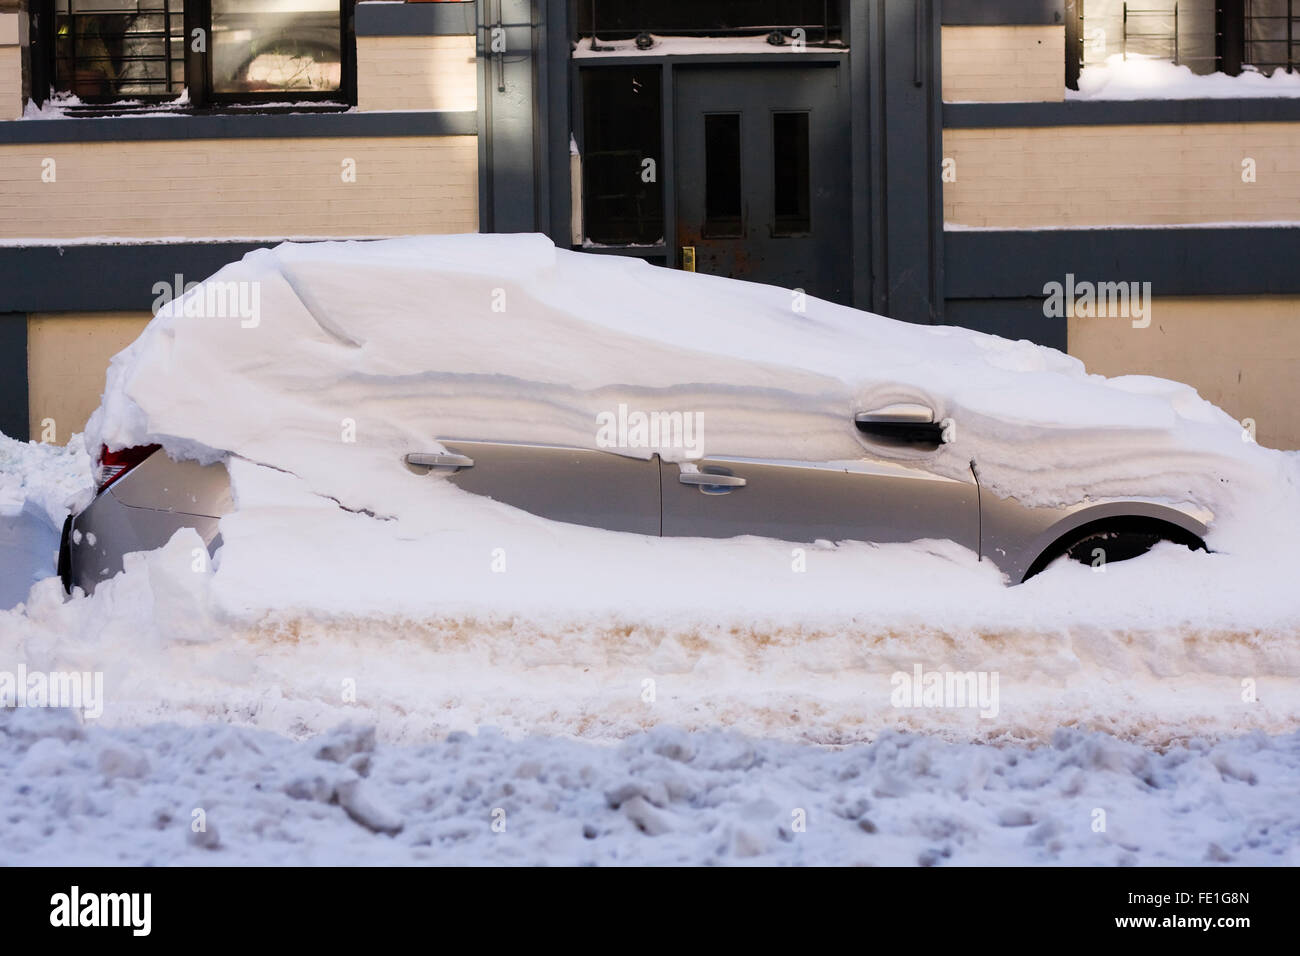 Eine schneebedeckte Fahrzeug noch auf einer Stadtstraße ausgegraben werden, nachdem ein Übernachtung Schneesturm Blizzard Bedingungen es begraben Stockfoto